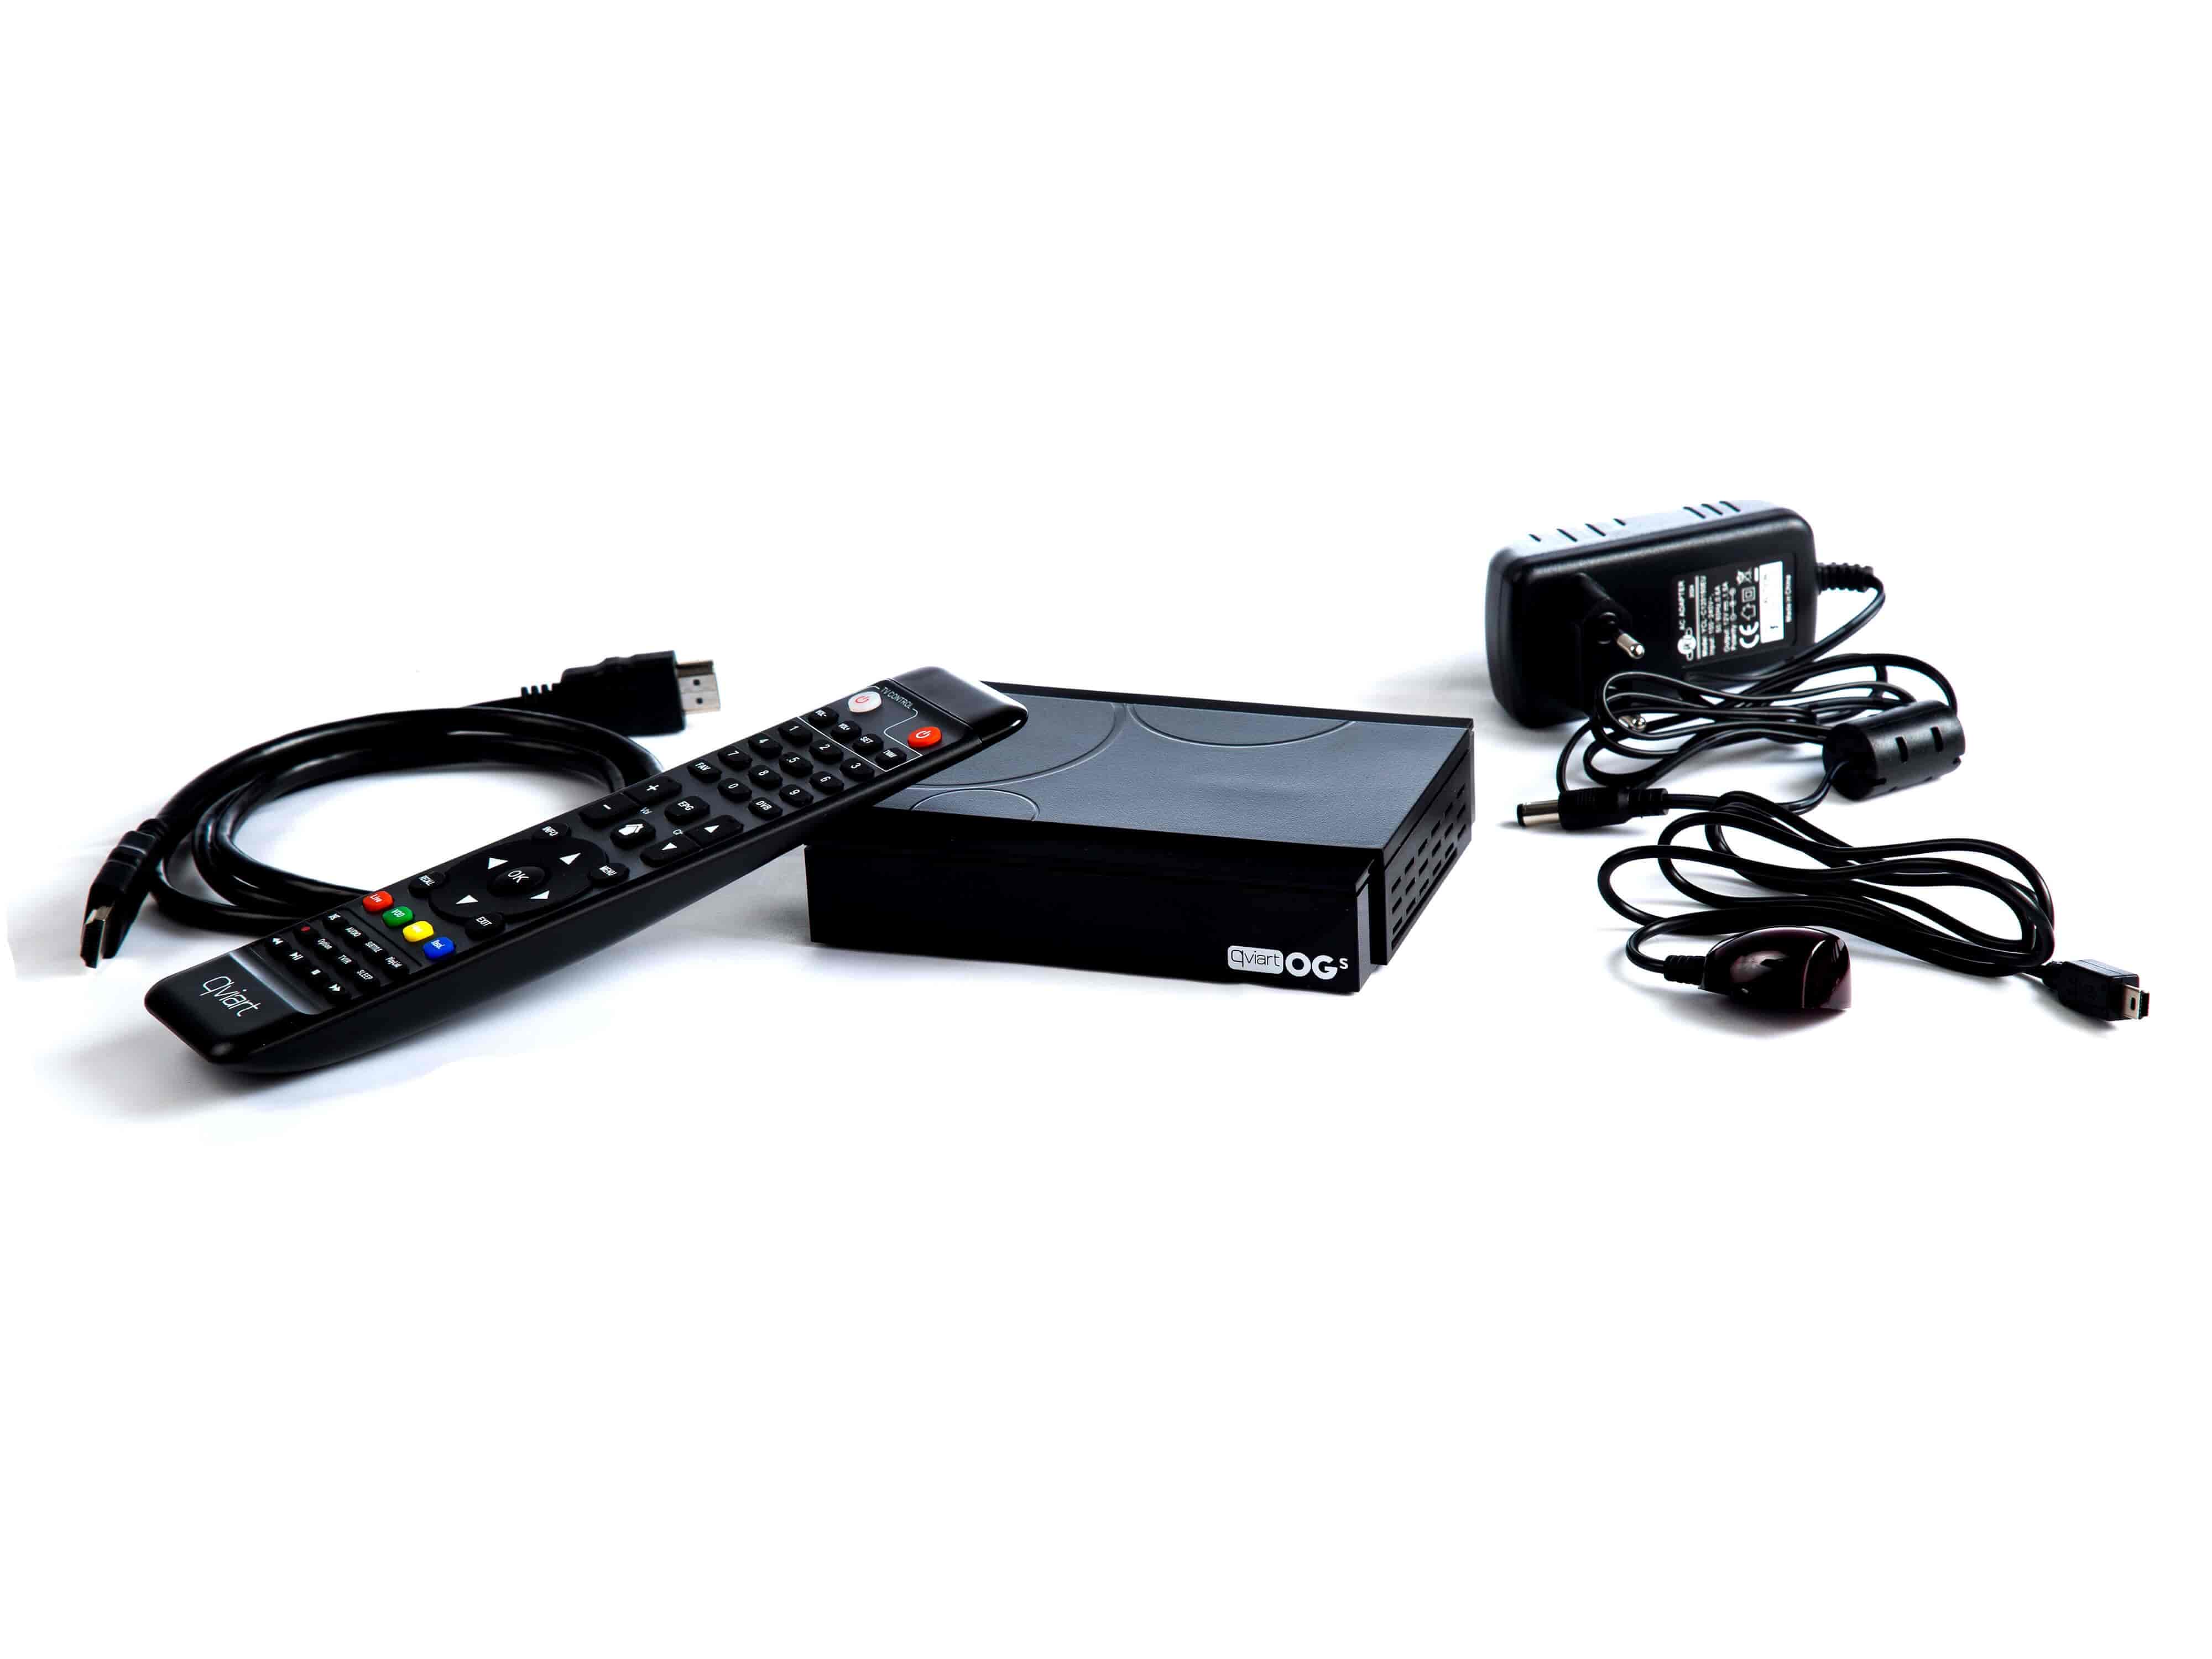 Alt i pakken - Qviart OGs DVB-S2 - IPTV TV boks - SAT og IPTV i samme boks.